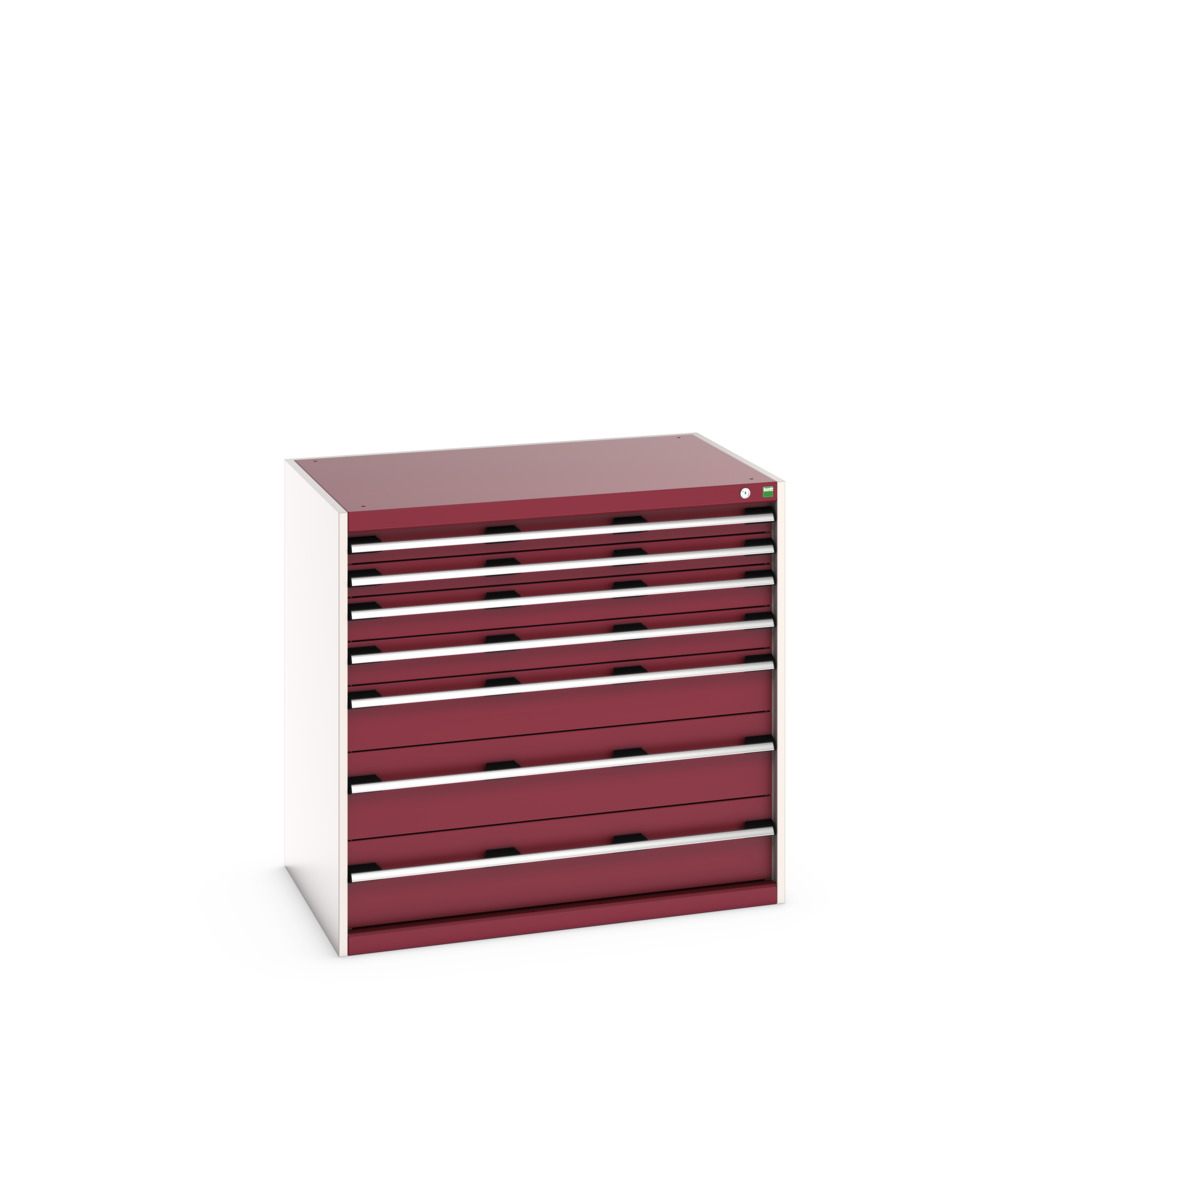 40029021.24V - cubio drawer cabinet